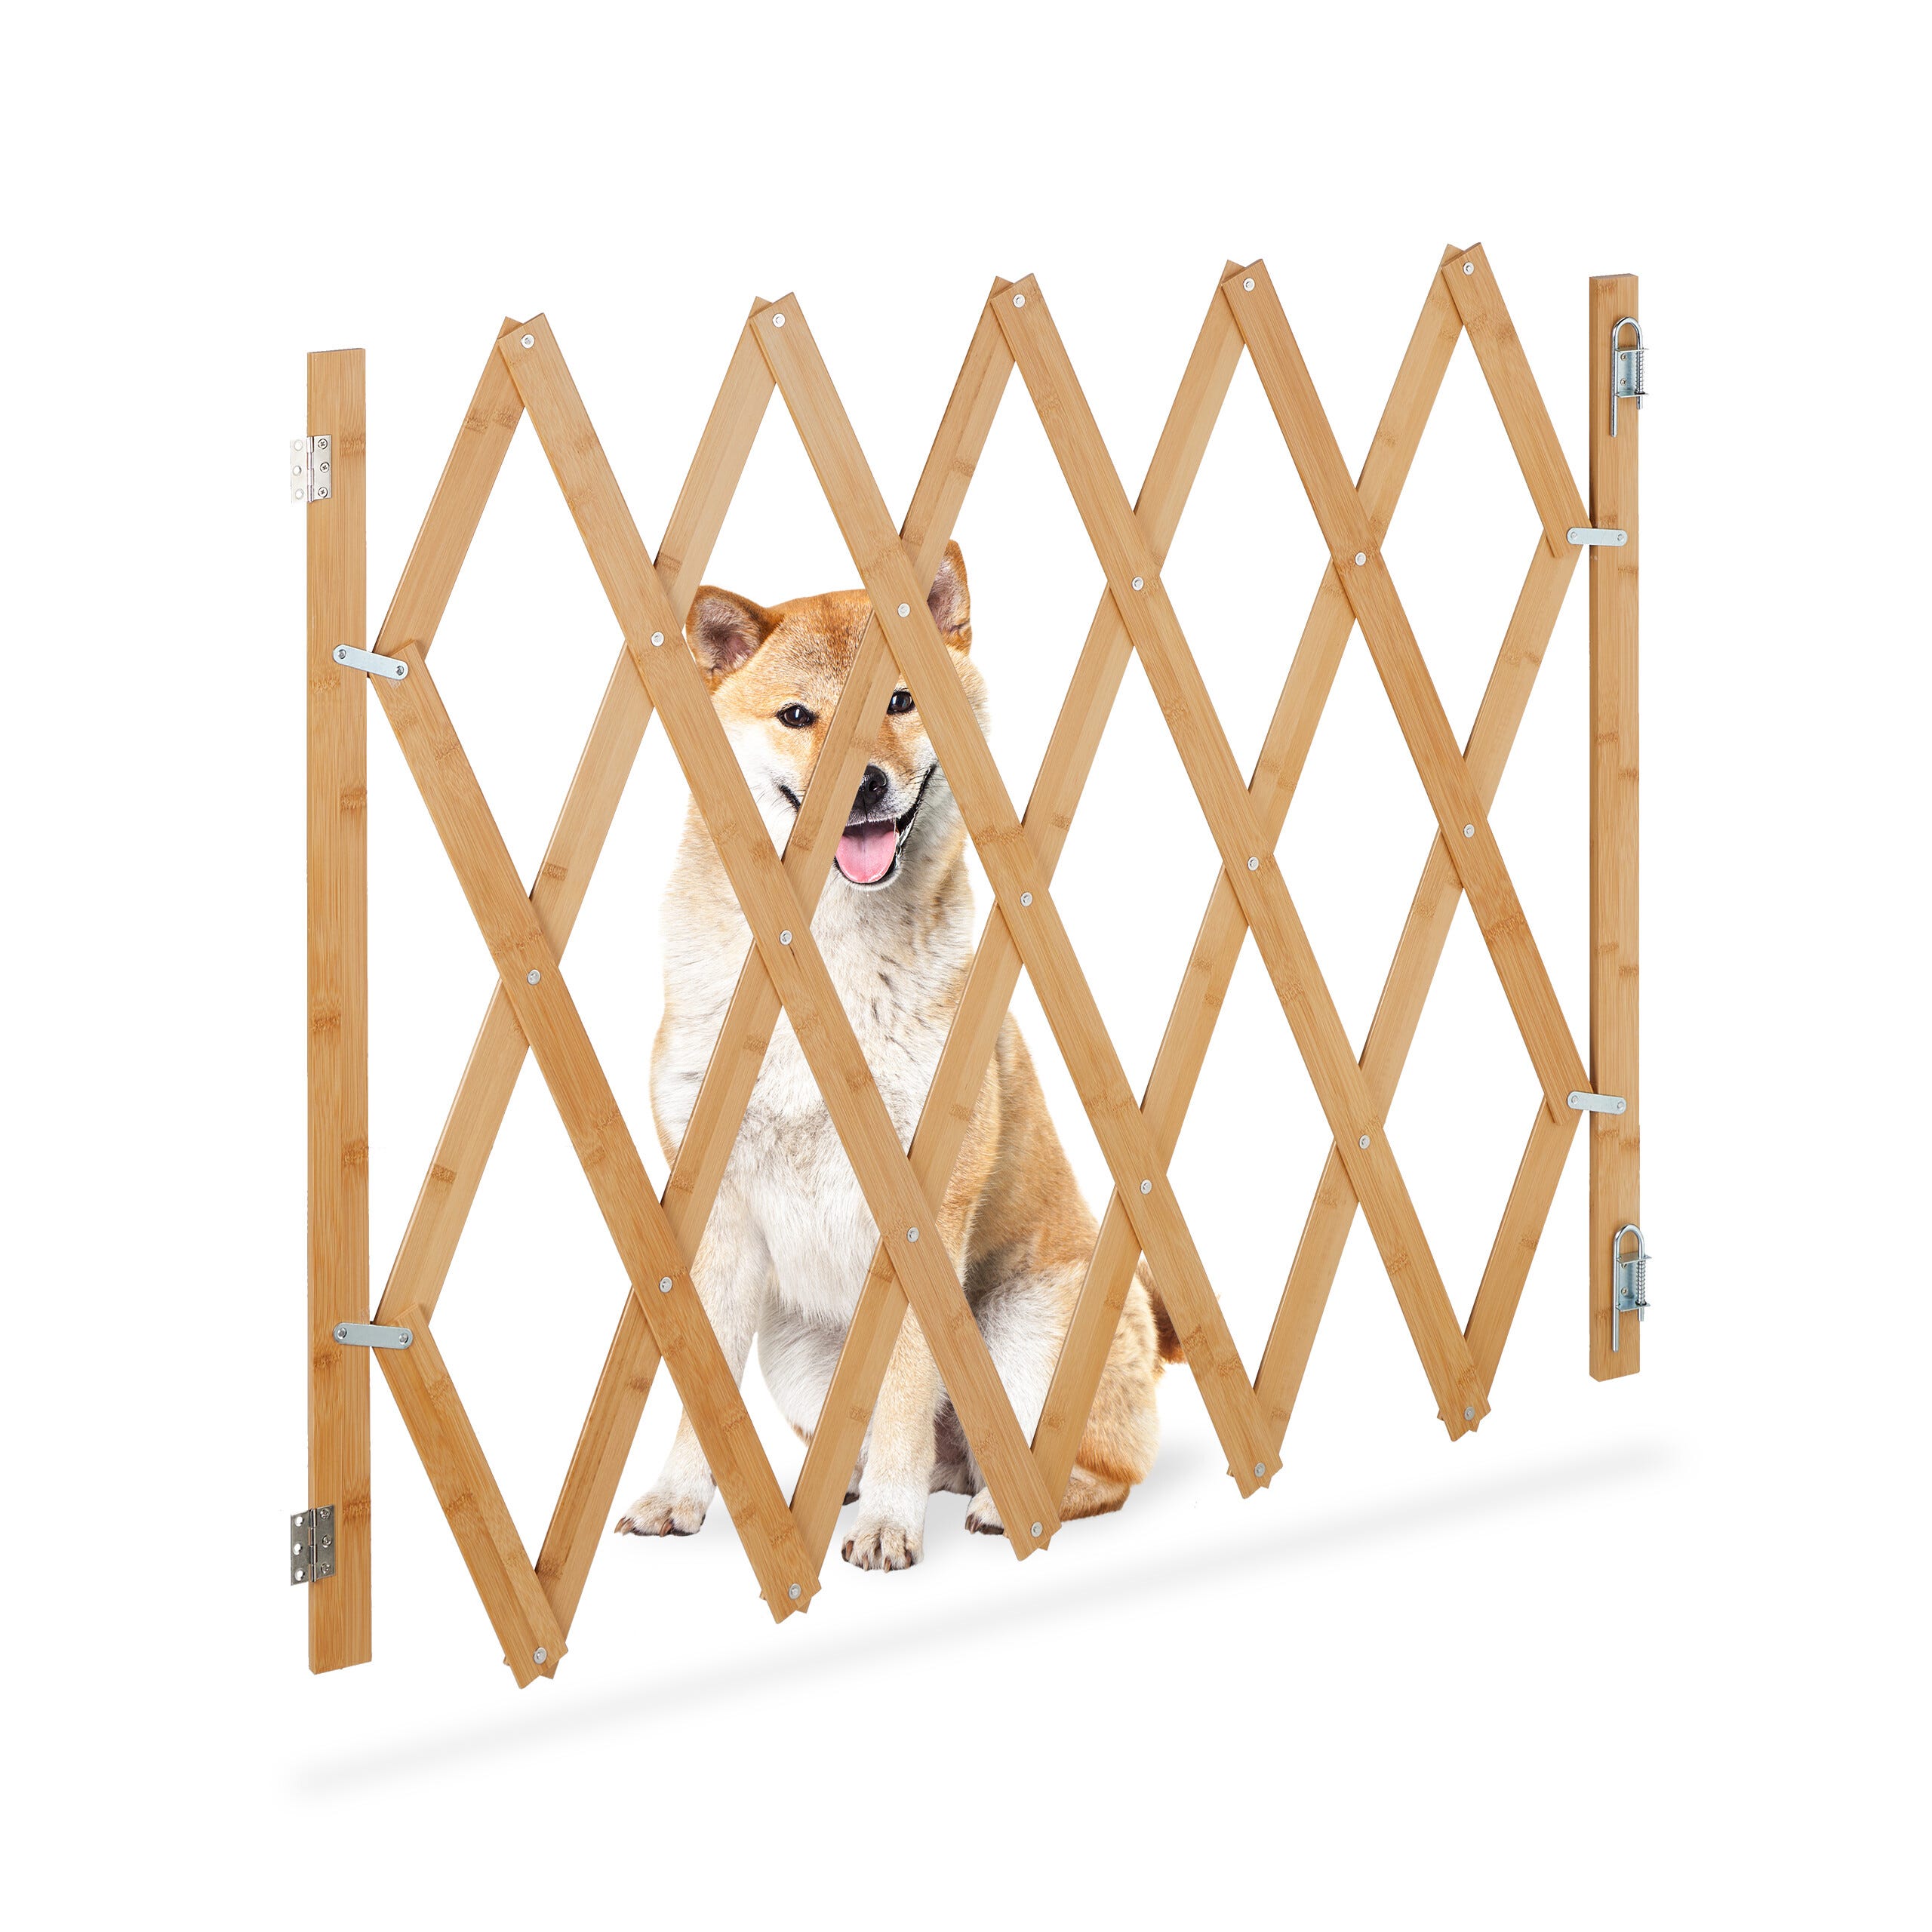 Relaxdays Barrière de sécurité pour chiens, jusqu'à 140 cm, 87